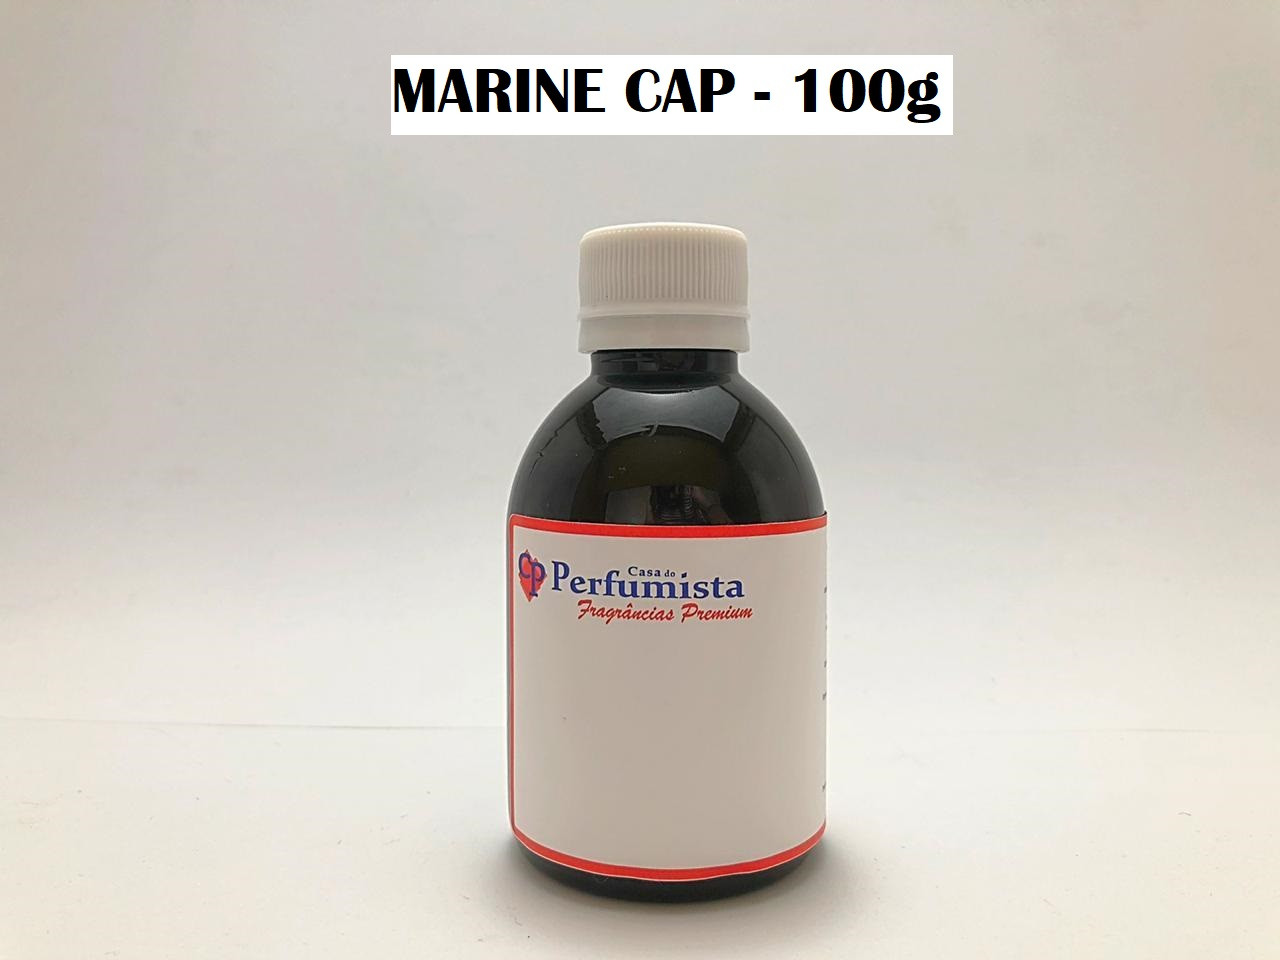 MARINE CAP - 100g